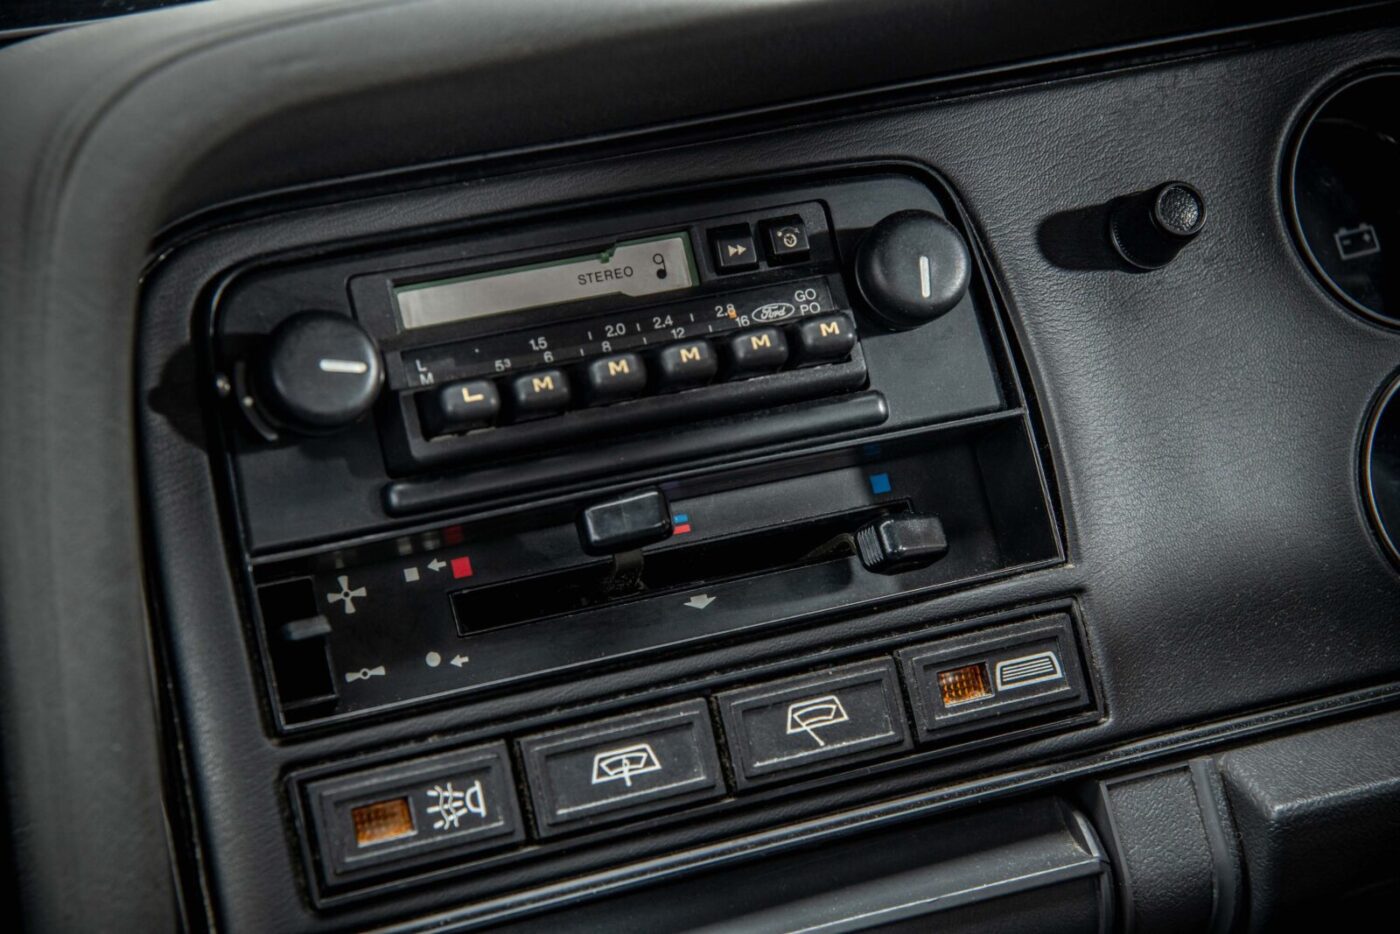 Ford Capri Laser radio casette